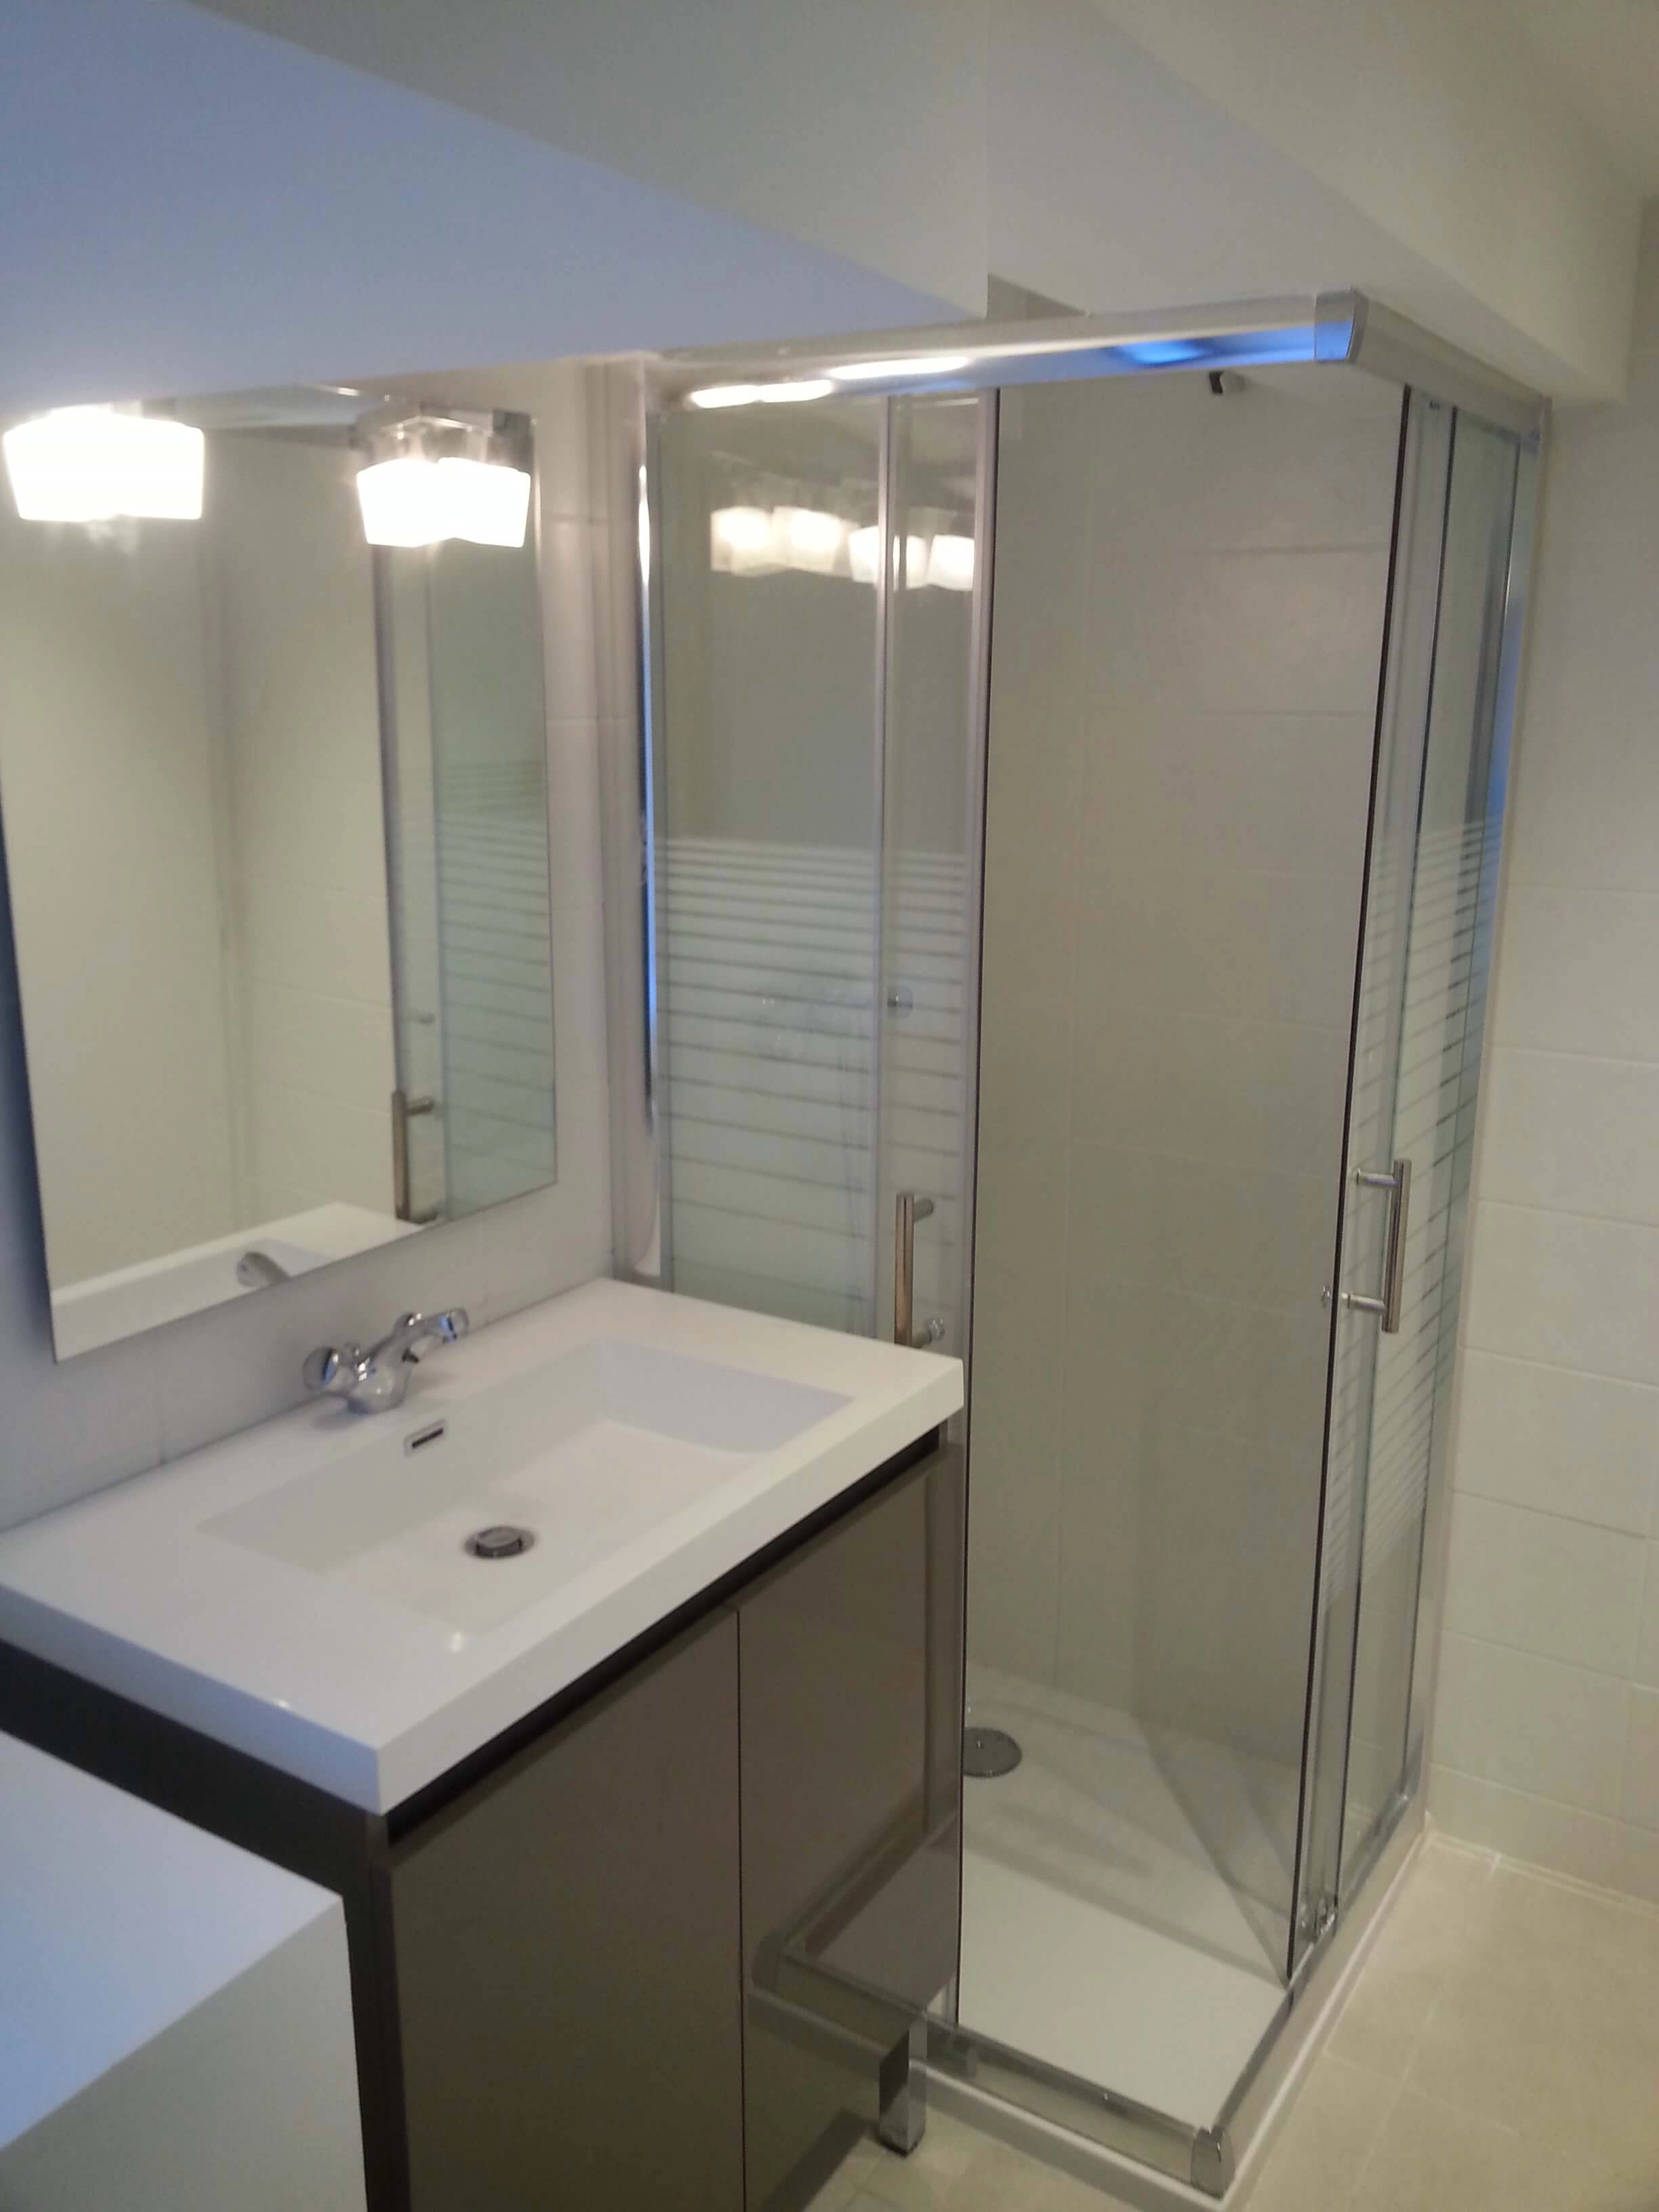 salle de bain, douche, ouverture en angle, espace optimisé